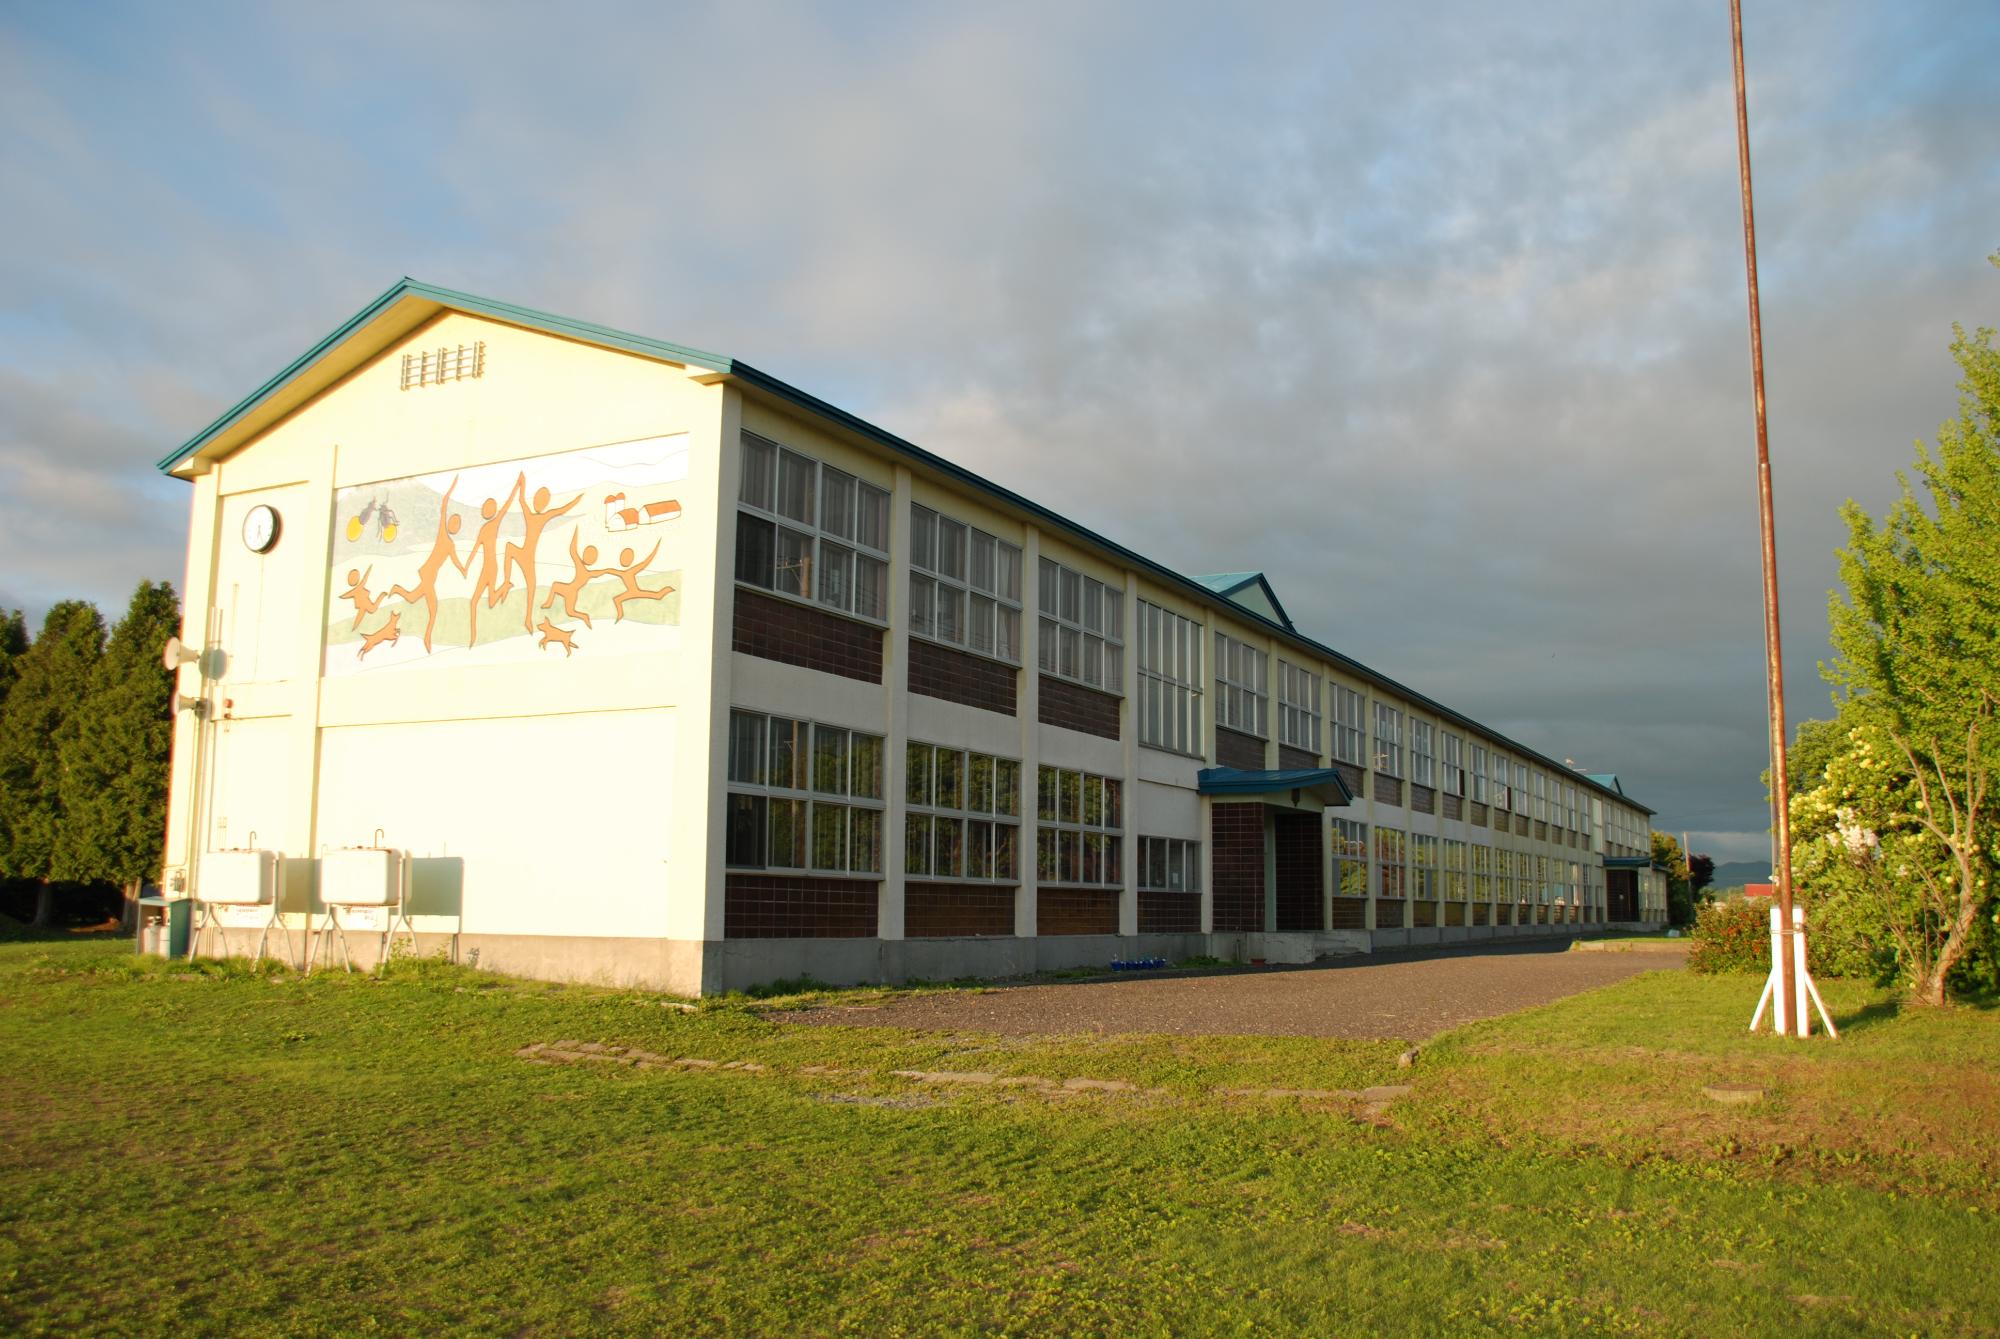 校舎横の壁に人の形をした壁画が描かれている2階建ての上士別小学校の校舎の写真